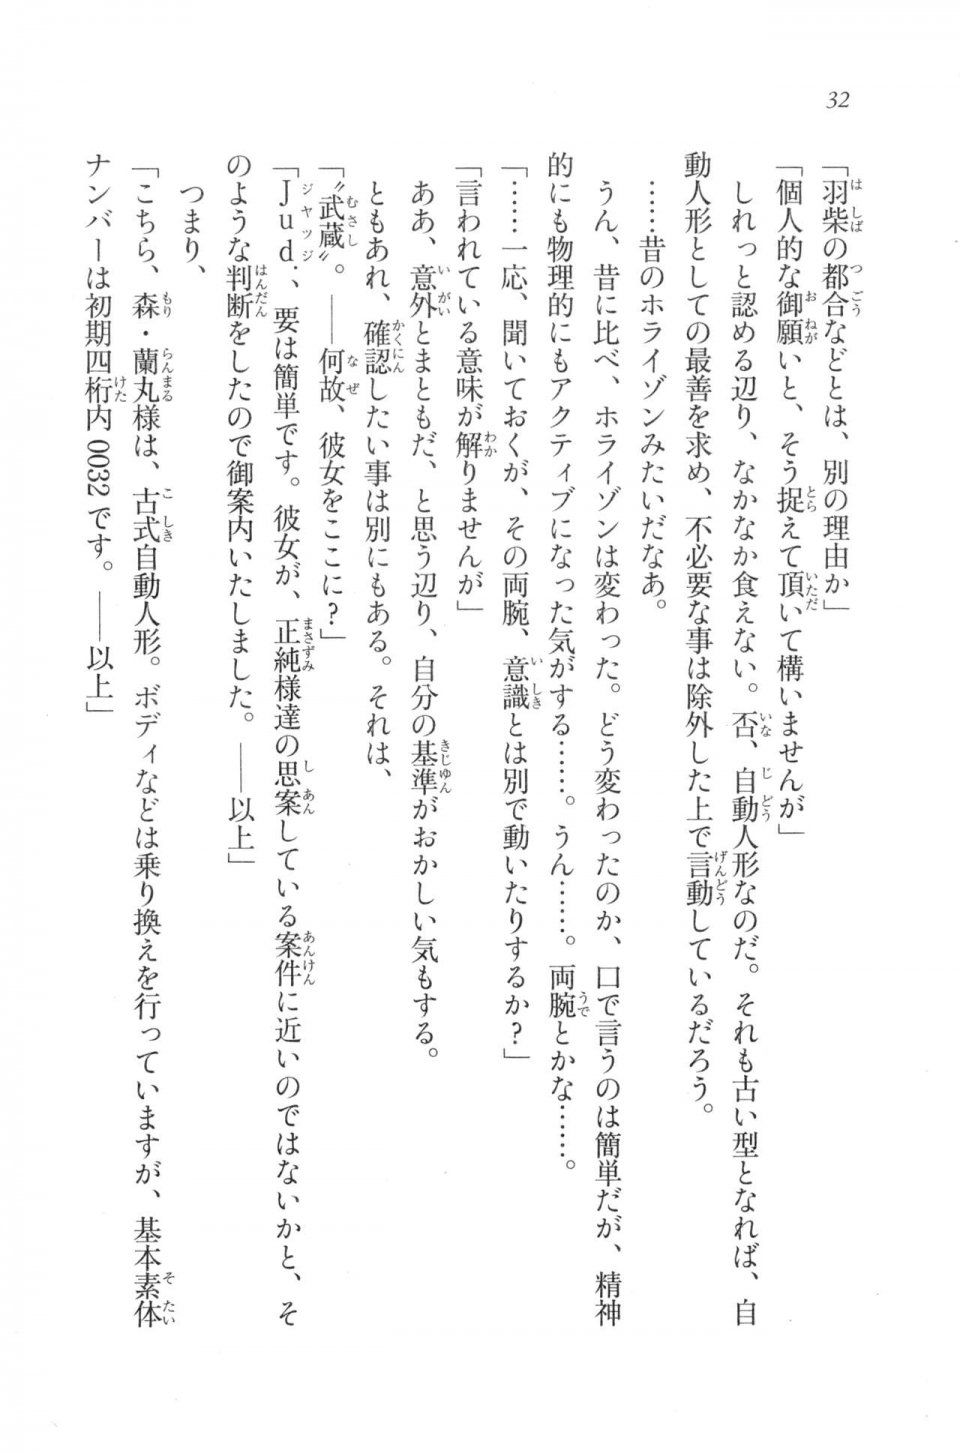 Kyoukai Senjou no Horizon LN Vol 20(8B) - Photo #32